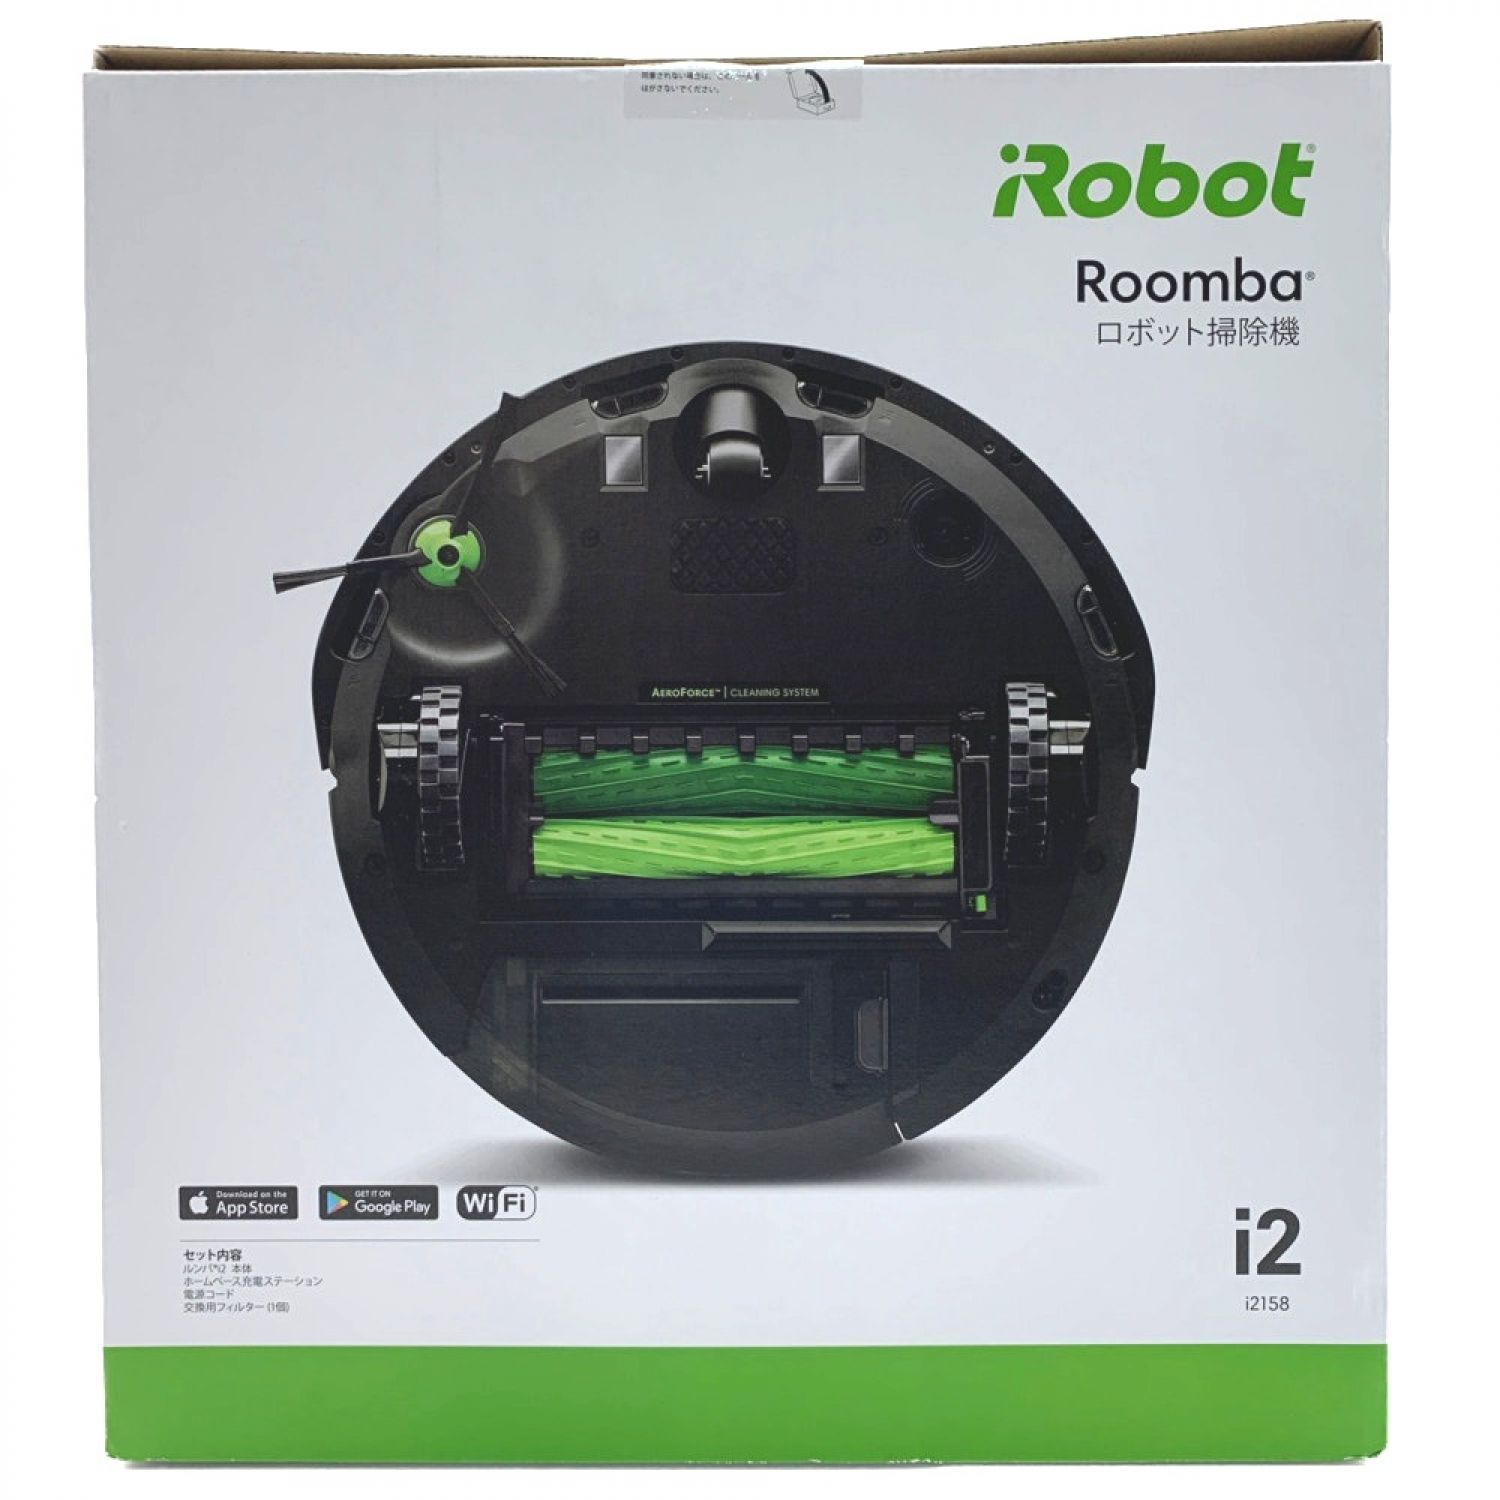 アイロボット ルンバ i2 i2158 未開封品 iRobot Roomba+inforsante.fr